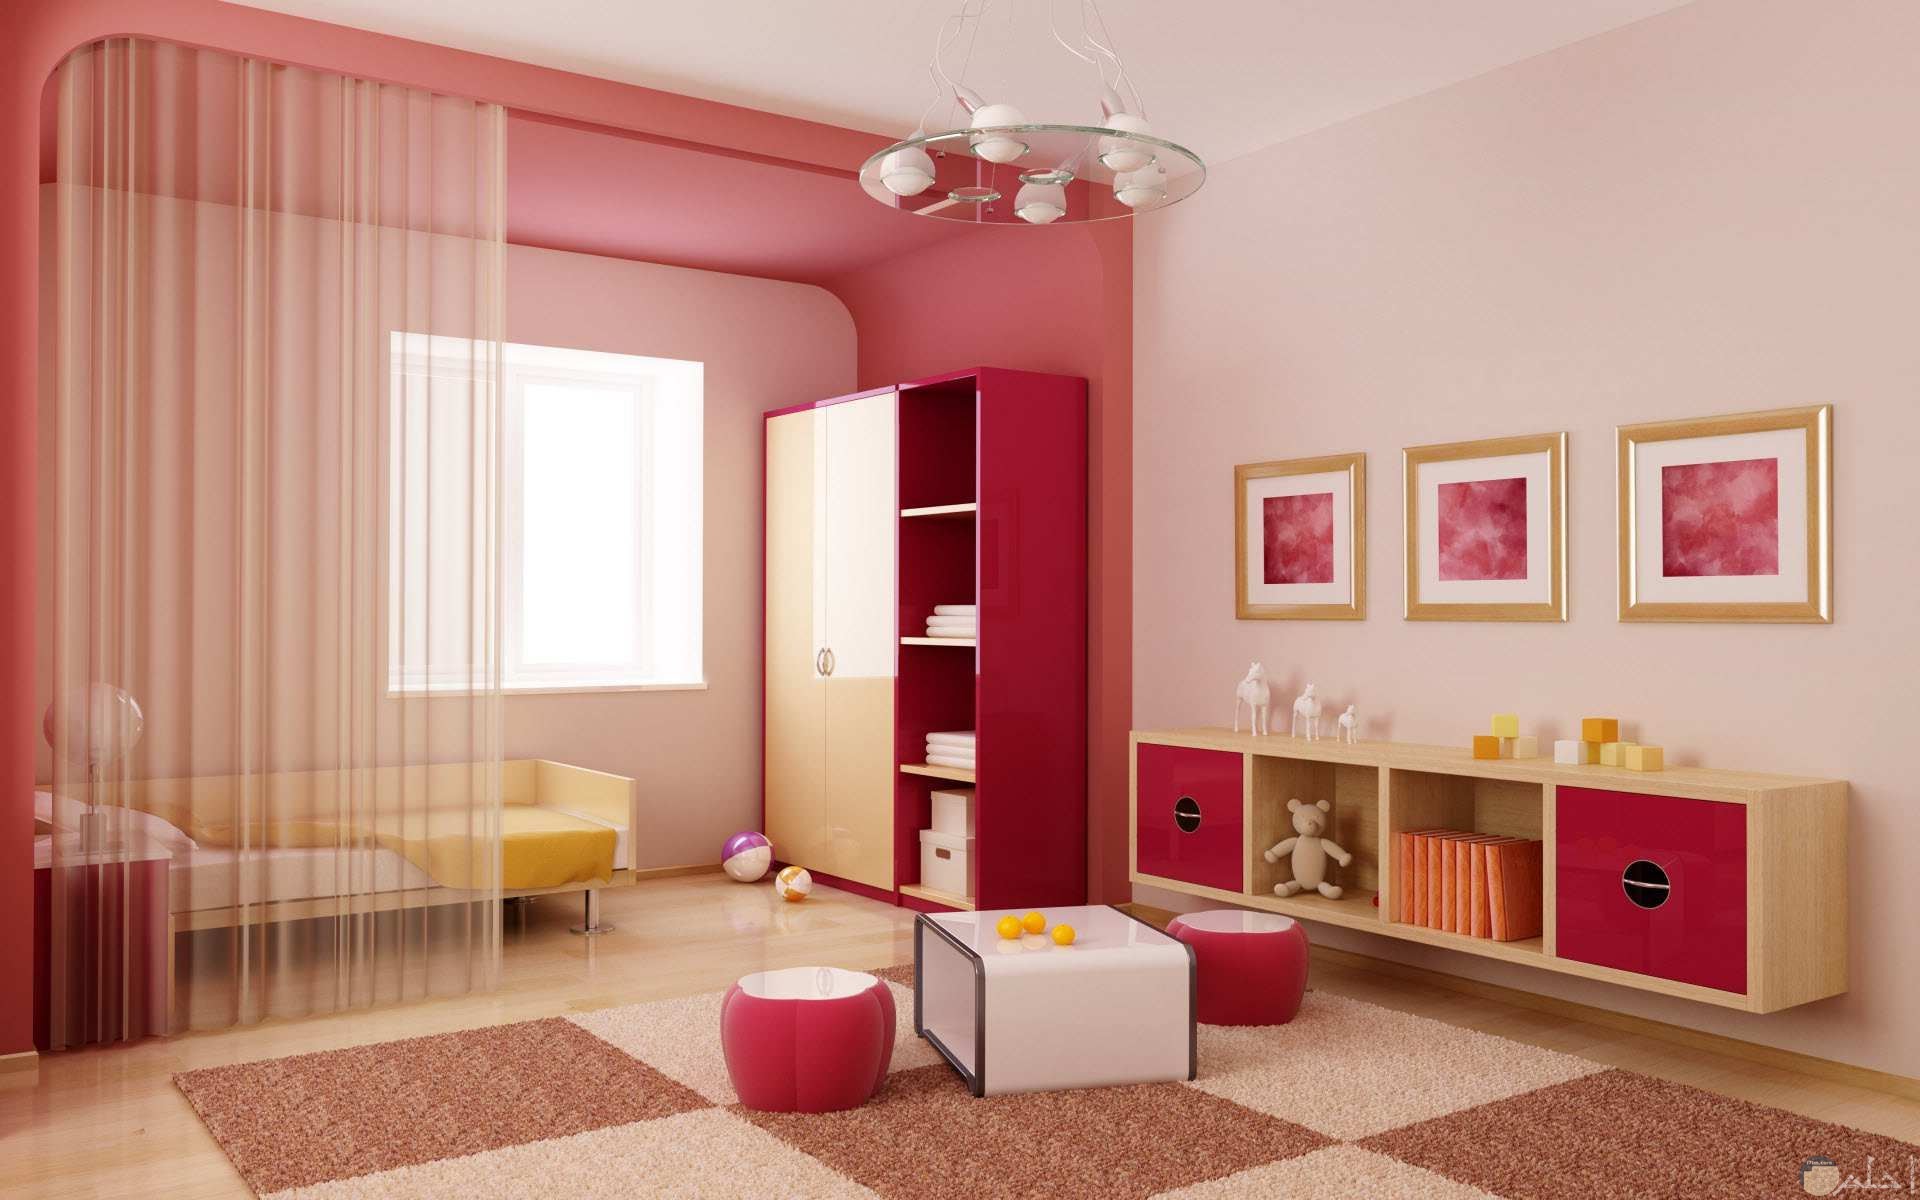 صورة جميلة لغرفة نوم طفلة صغيرة باللون الأحمر والوردي رائعة جدا